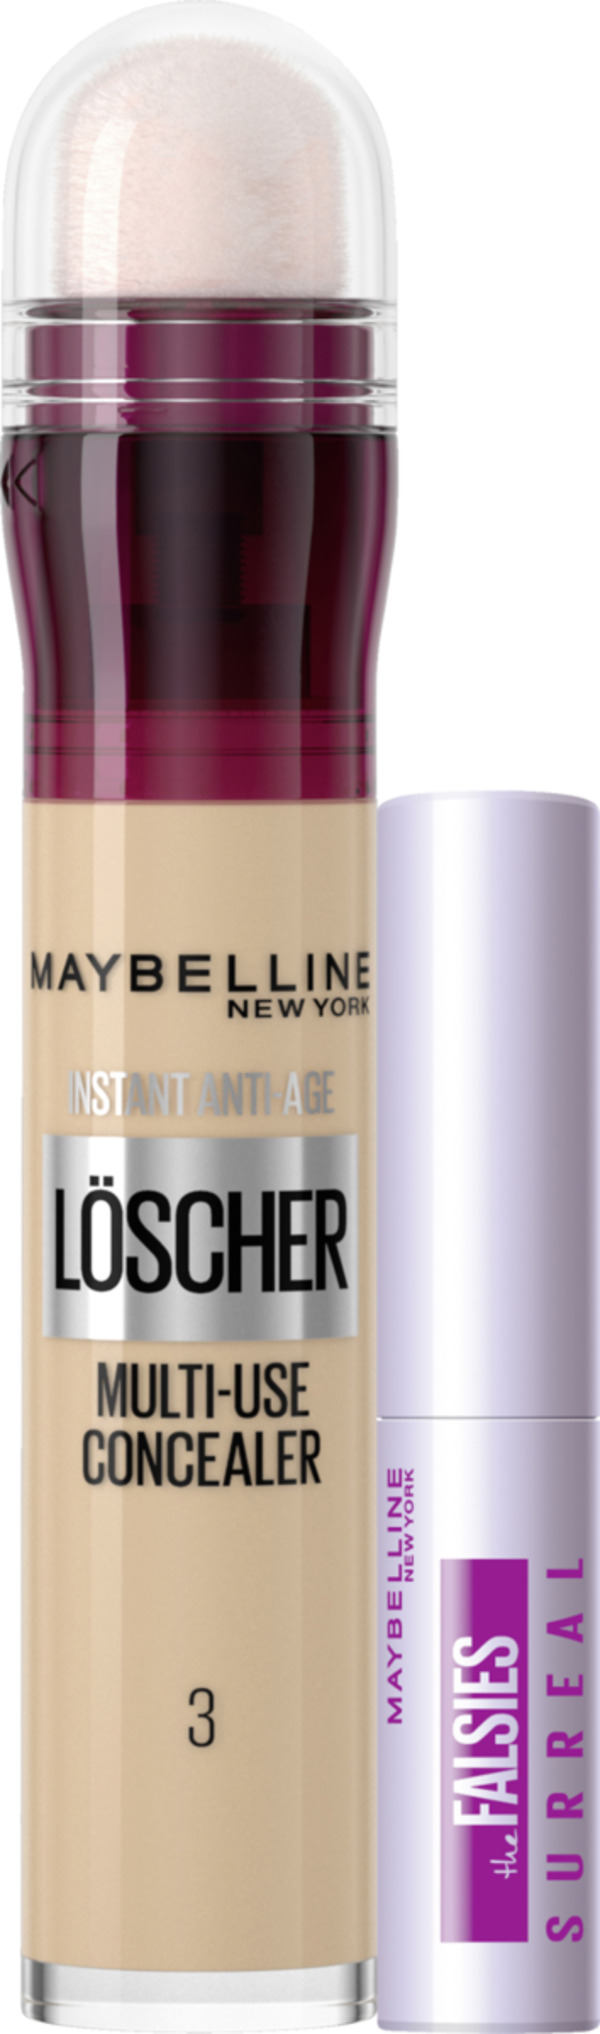 Bild 1 von Maybelline New York Make-up-Set: Instant Anti-Age Löscher Concealer 03 Fair + MiniFalsies Surreal Extensions Mascara